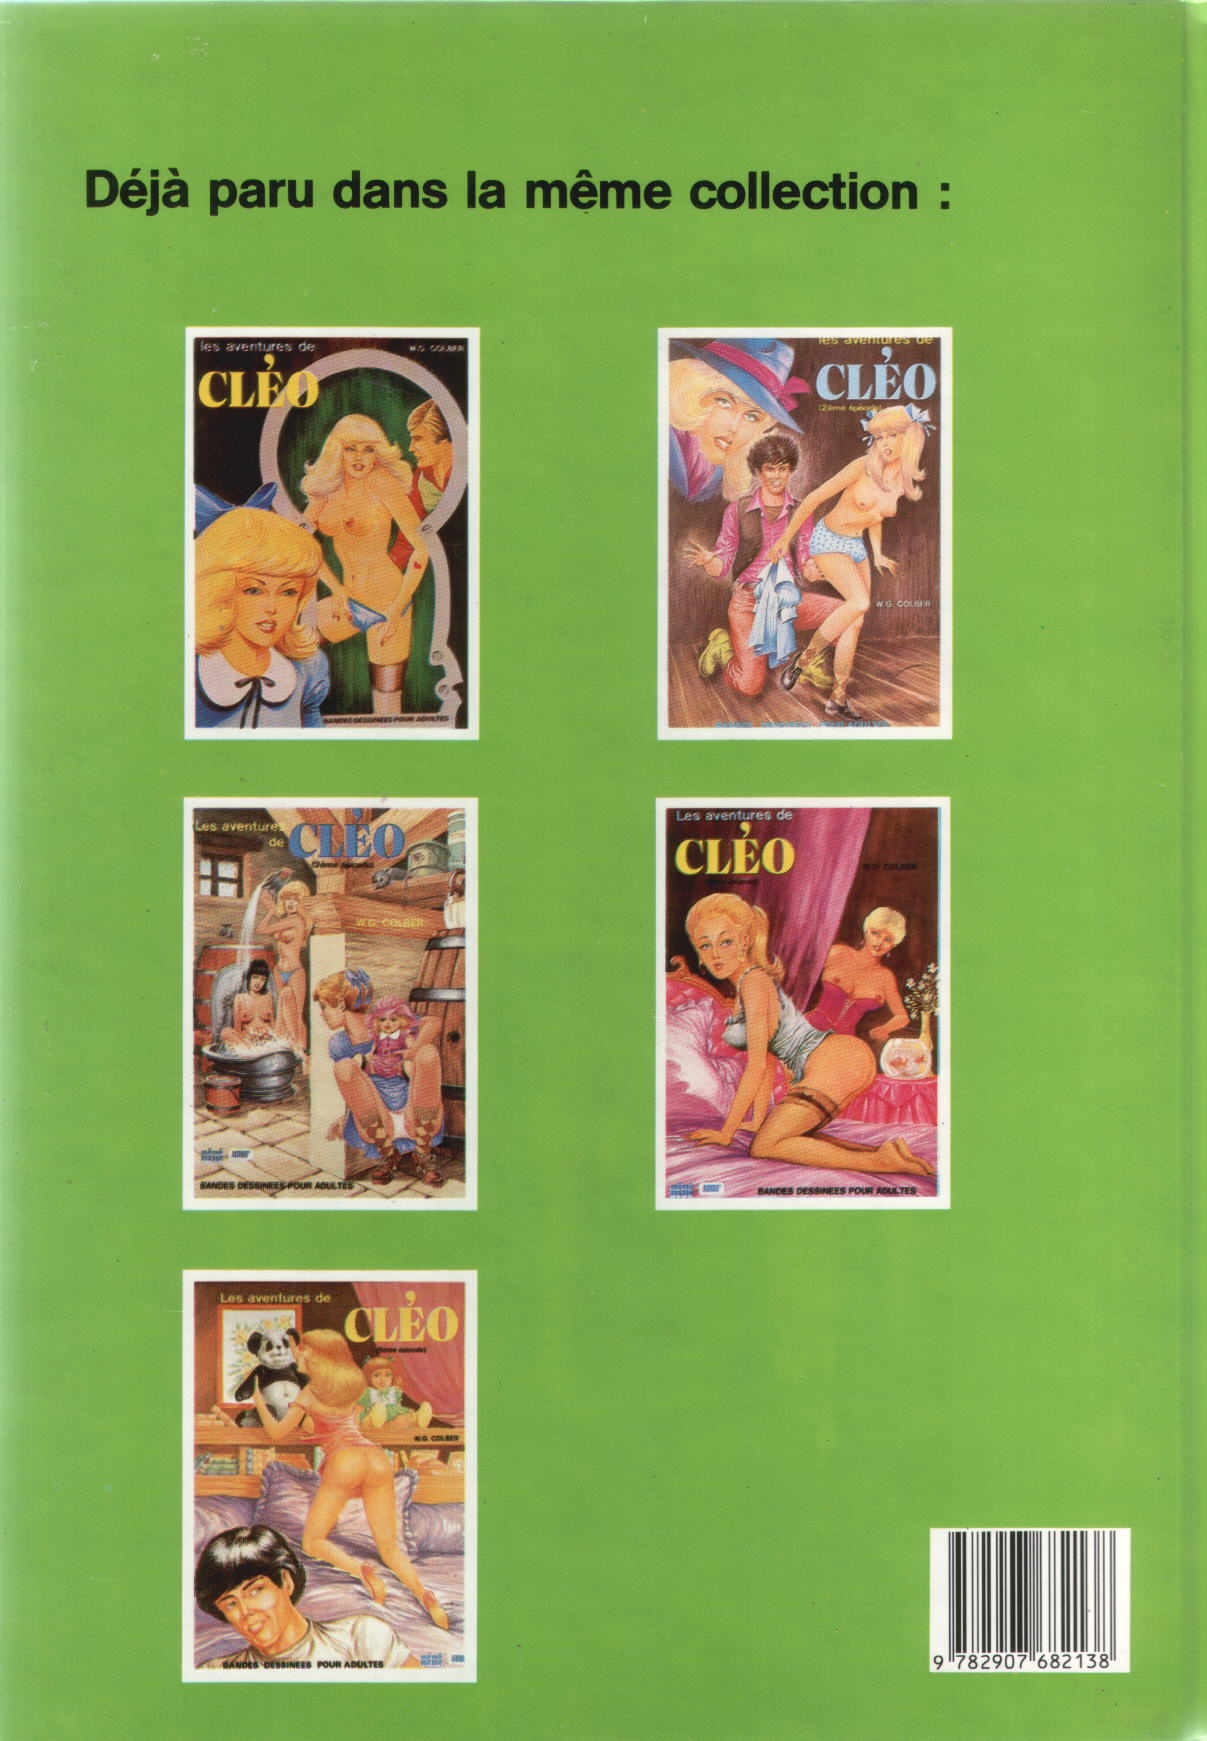 Les aventures de Cleo 6 numero d'image 47